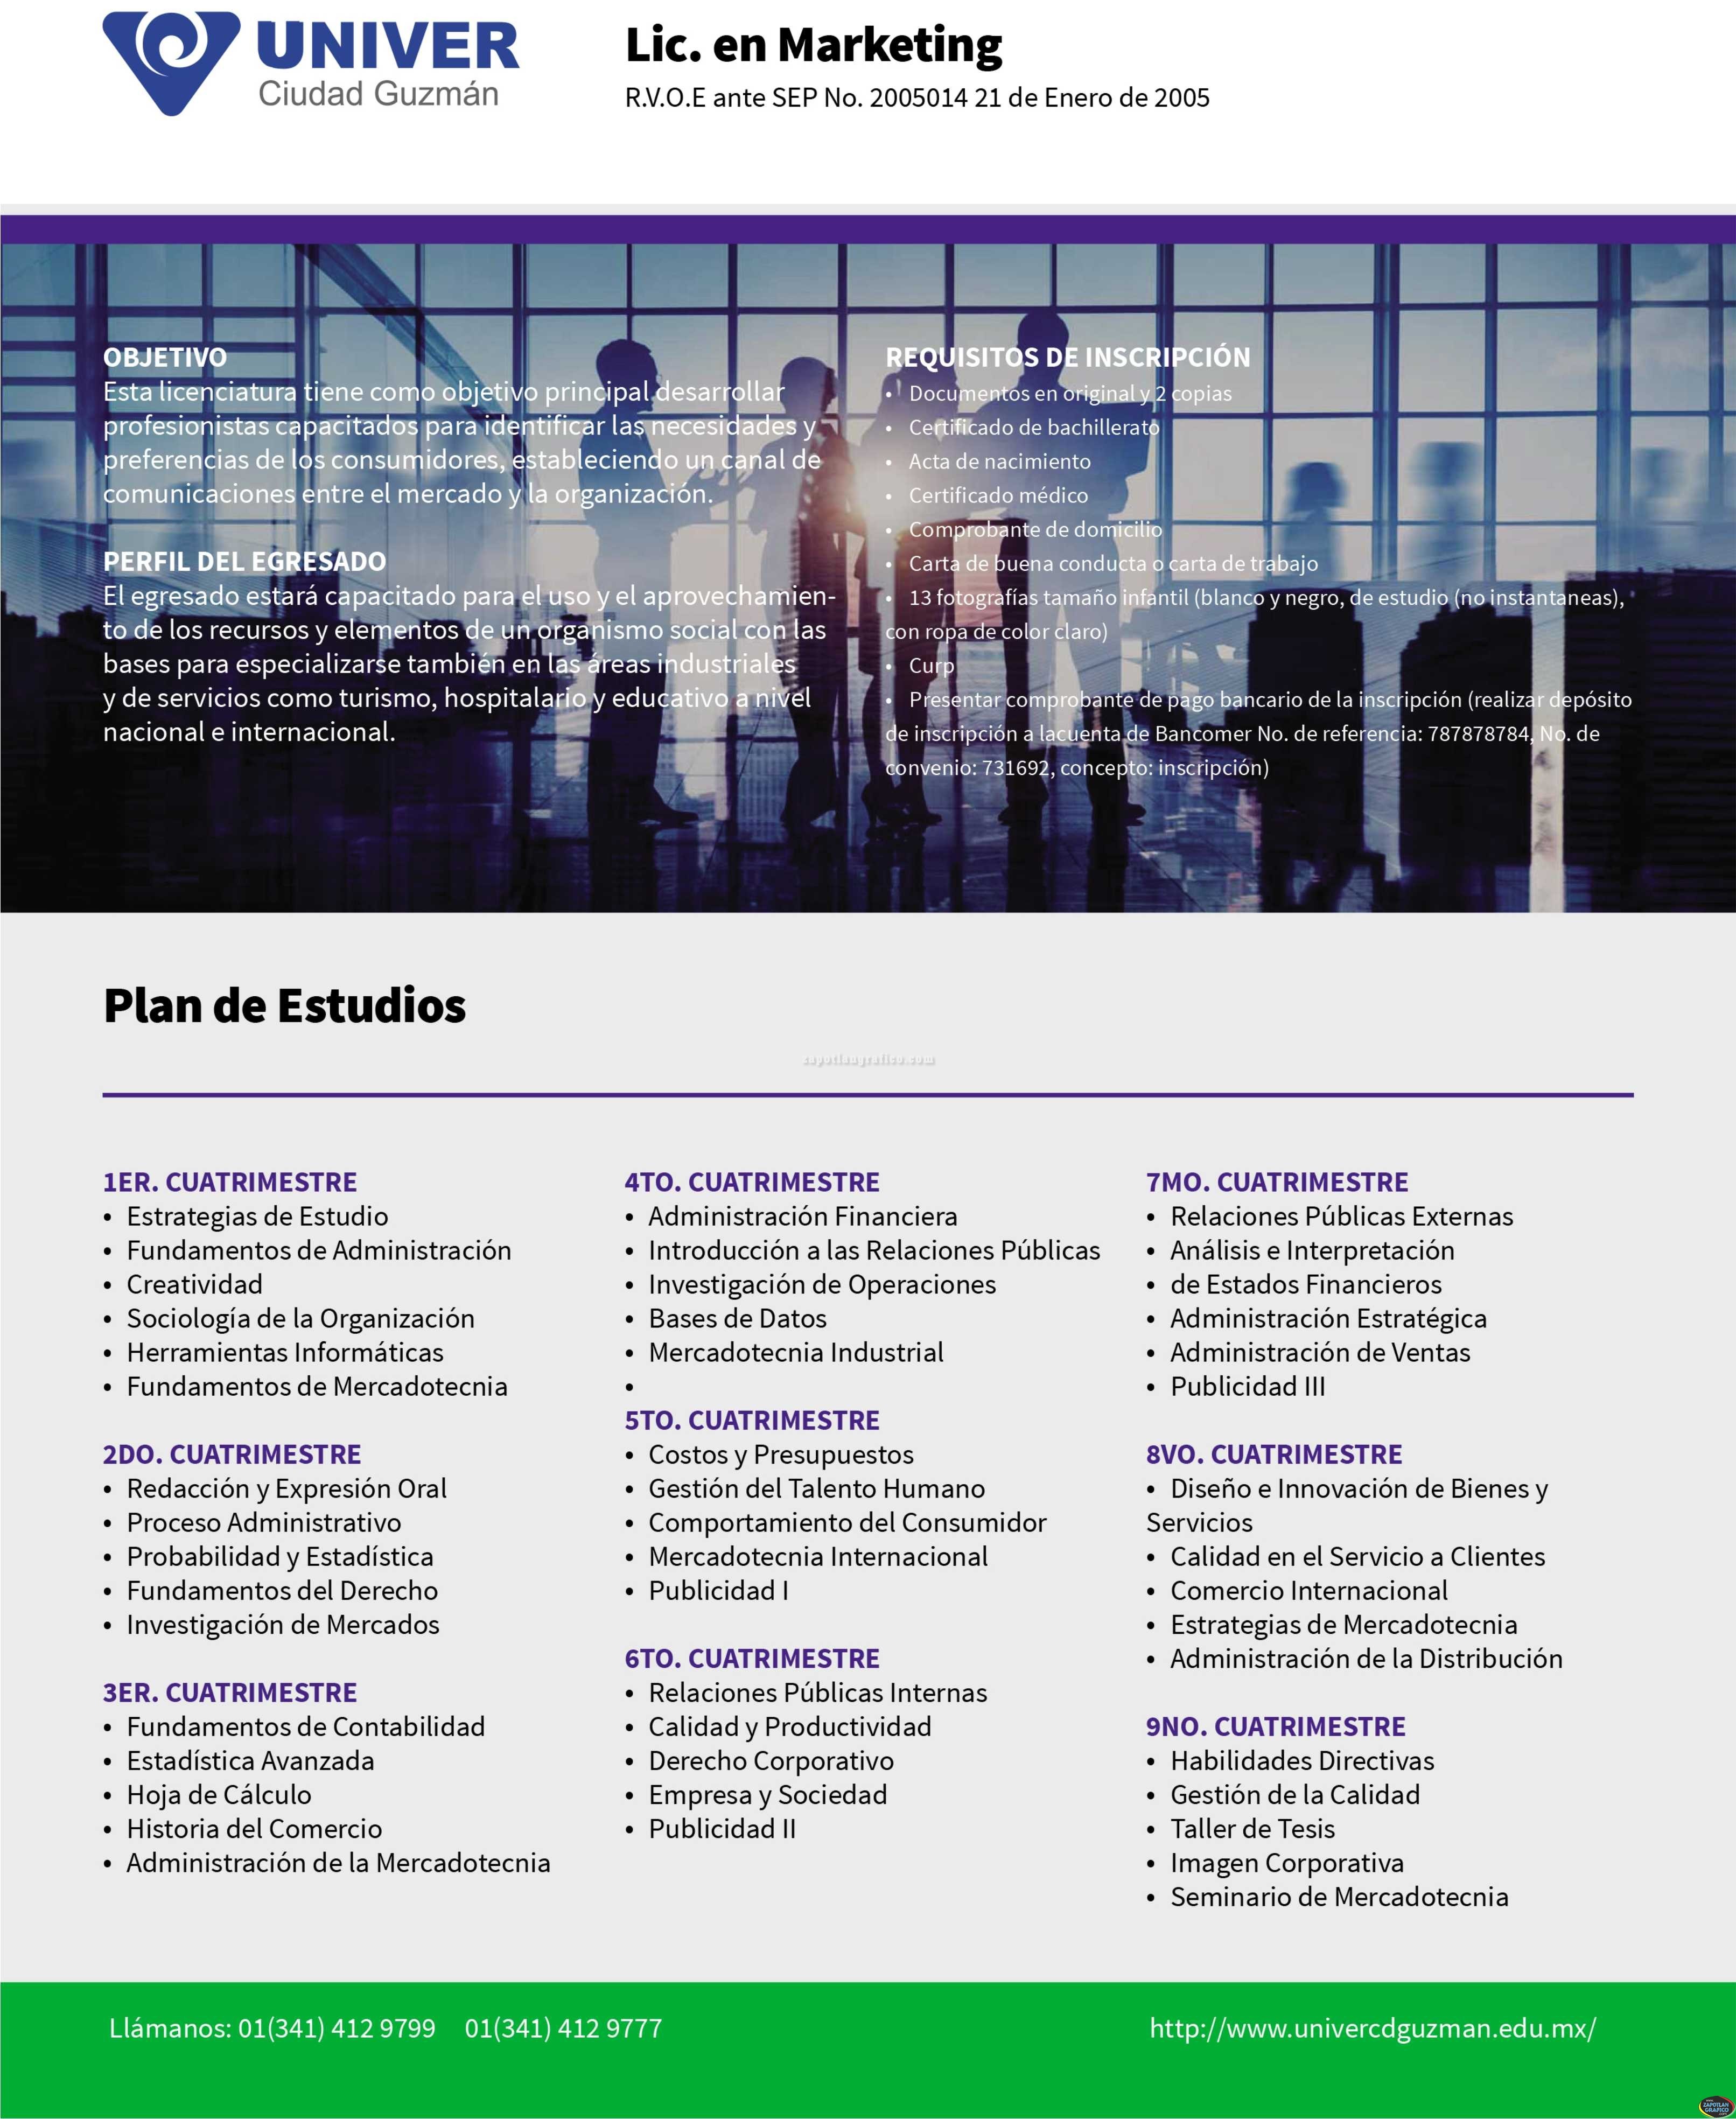 Plan de Estudios: Licenciatura en Marketing UNIVER Ciudad Guzmán, Jal.